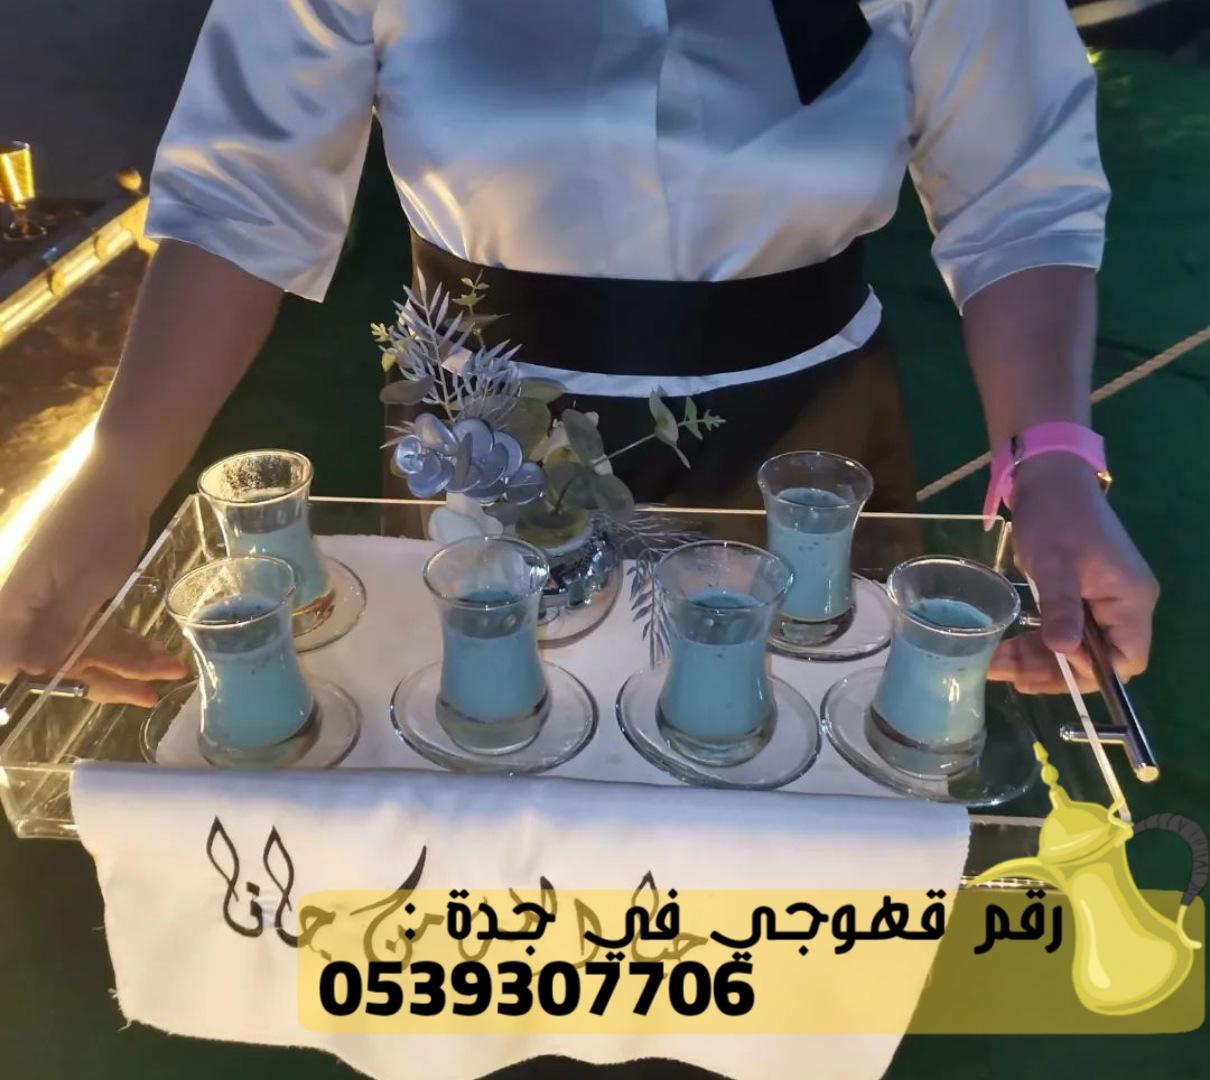 رقم صباب قهوة في جدة,0539307706 958949858